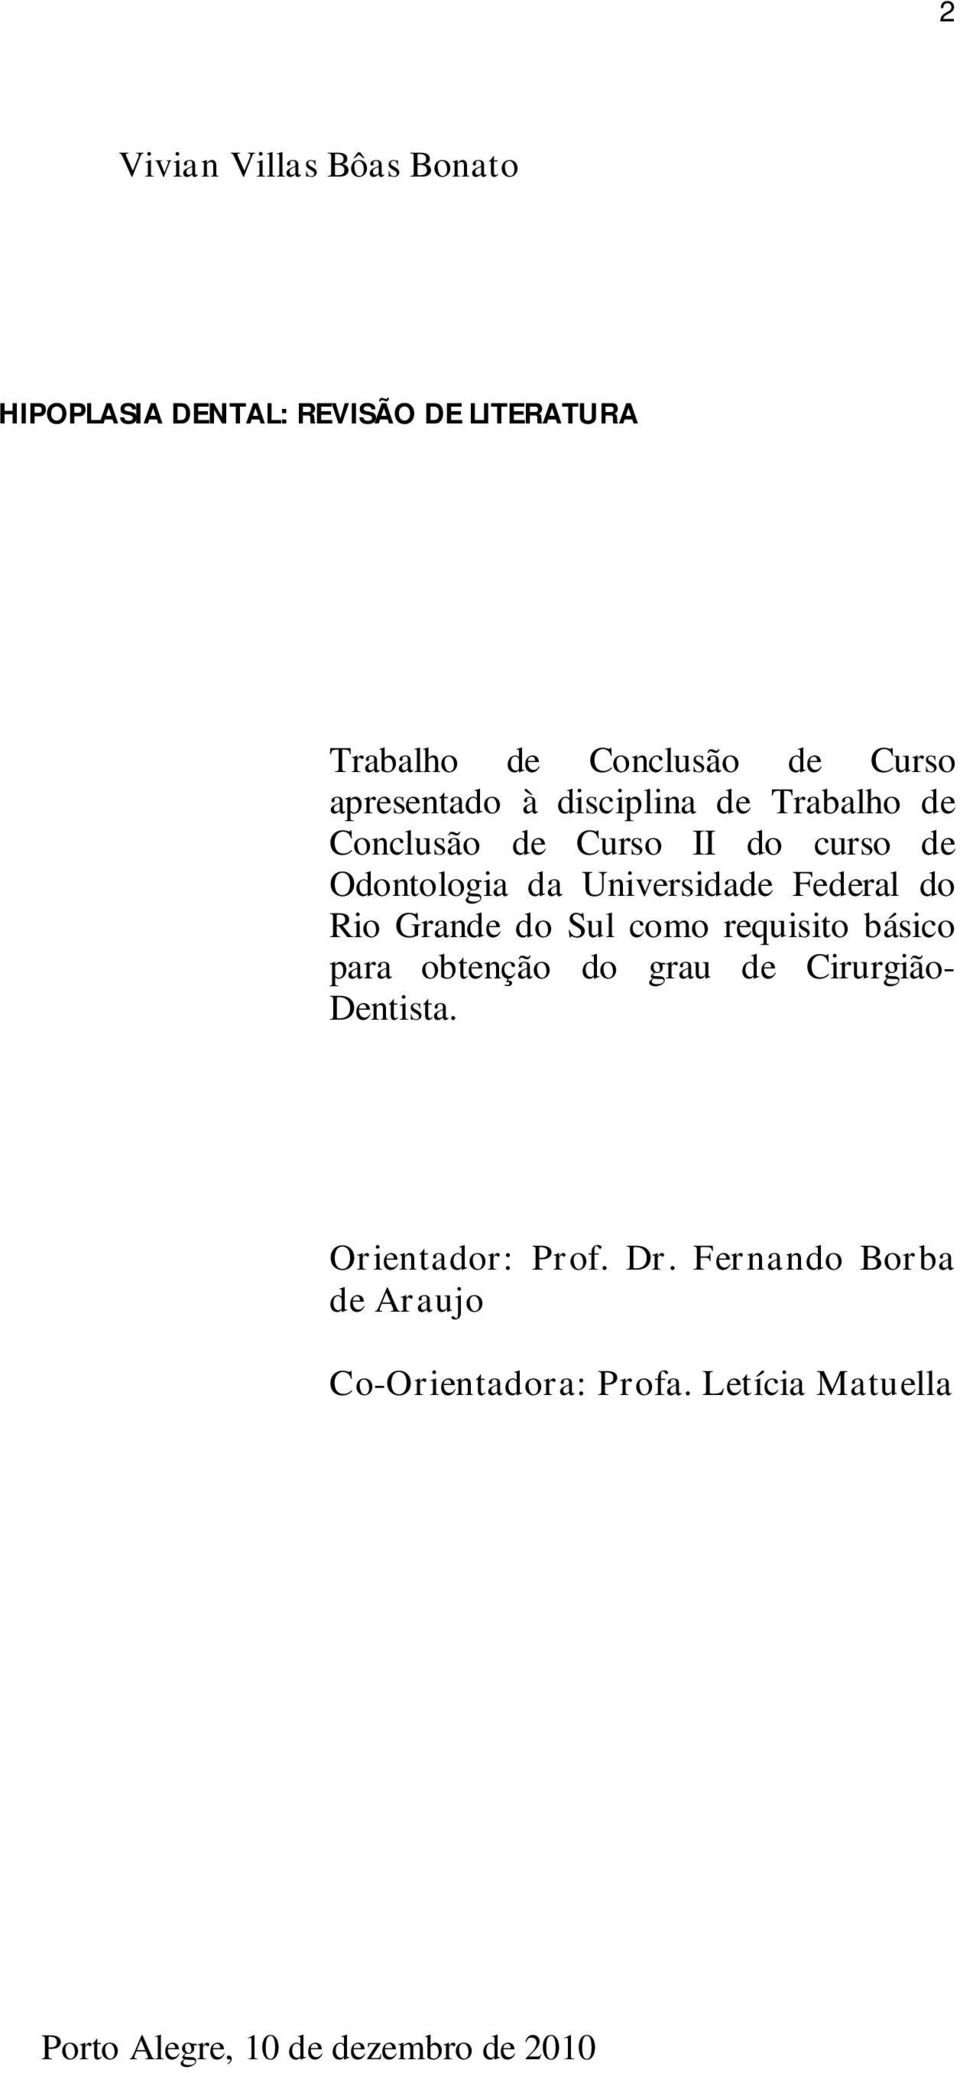 Federal do Rio Grande do Sul como requisito básico para obtenção do grau de Cirurgião- Dentista.